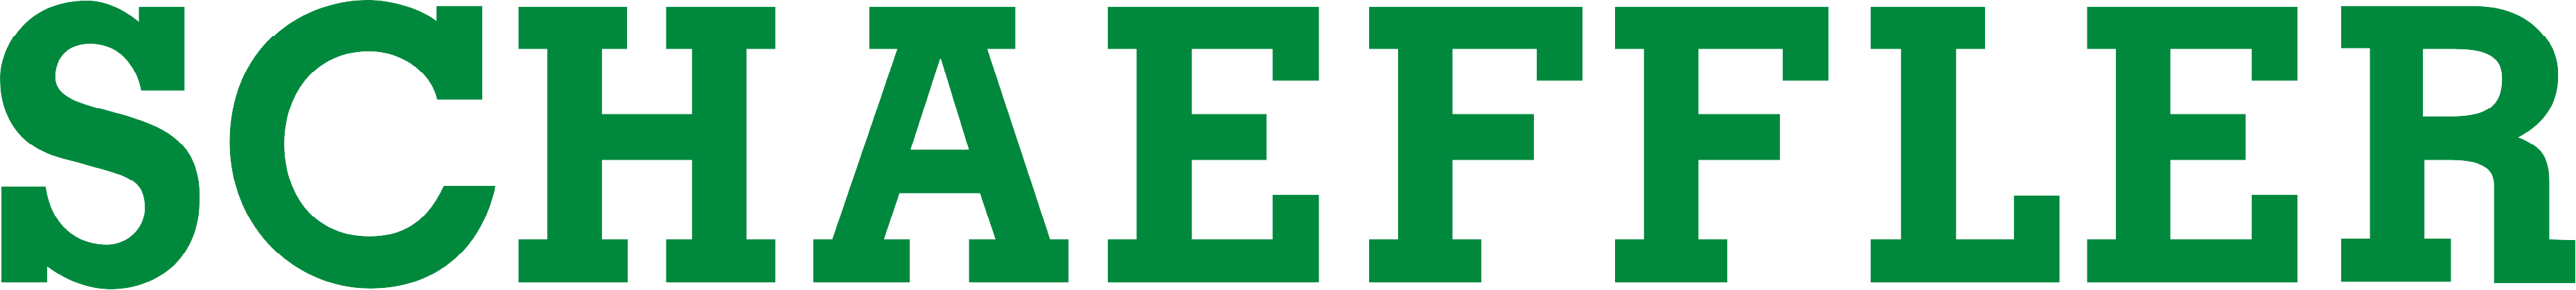 Logo von Schaeffler in Farbe